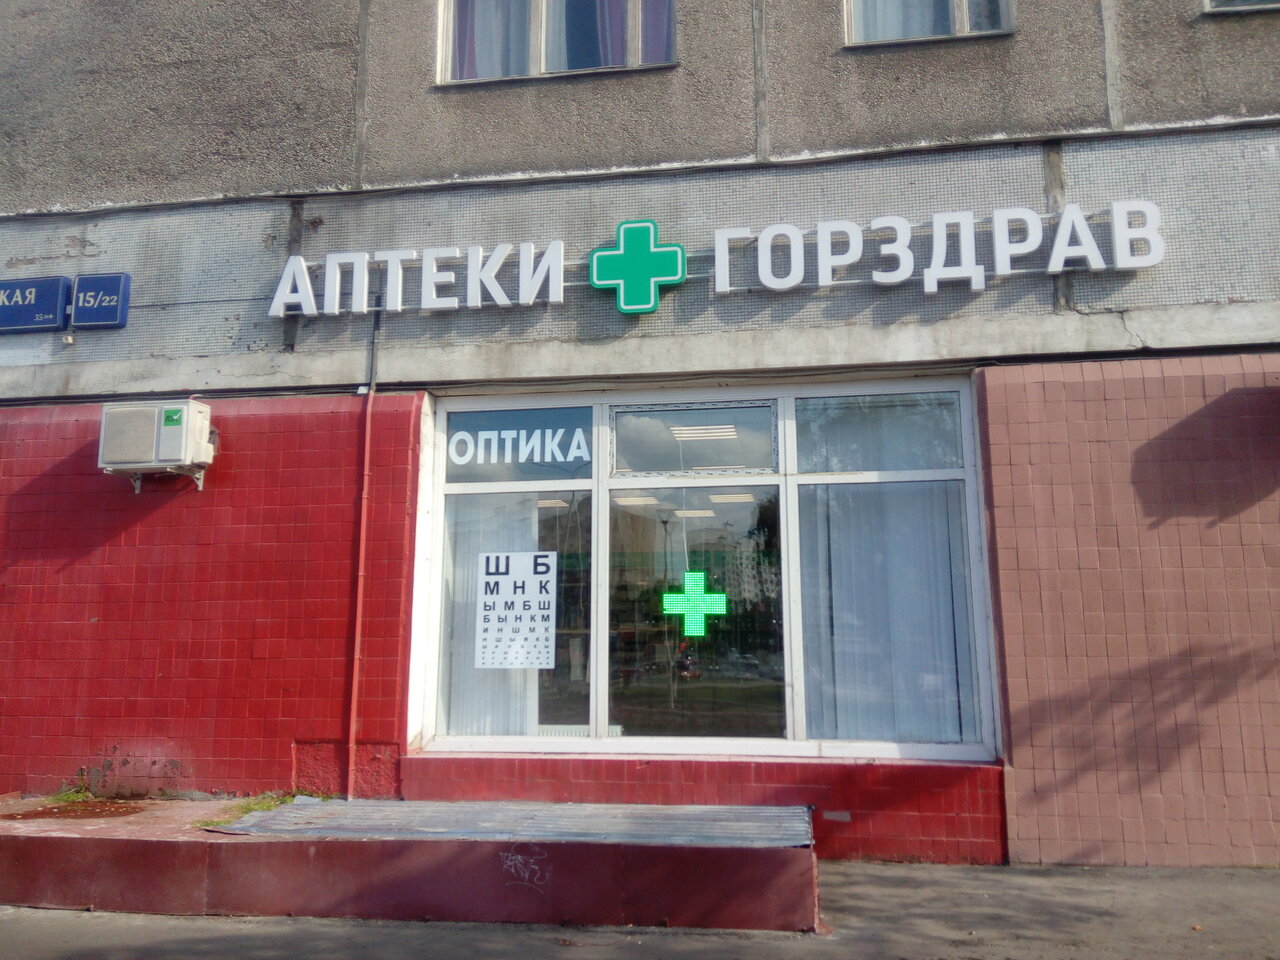 Добромед аптека москва